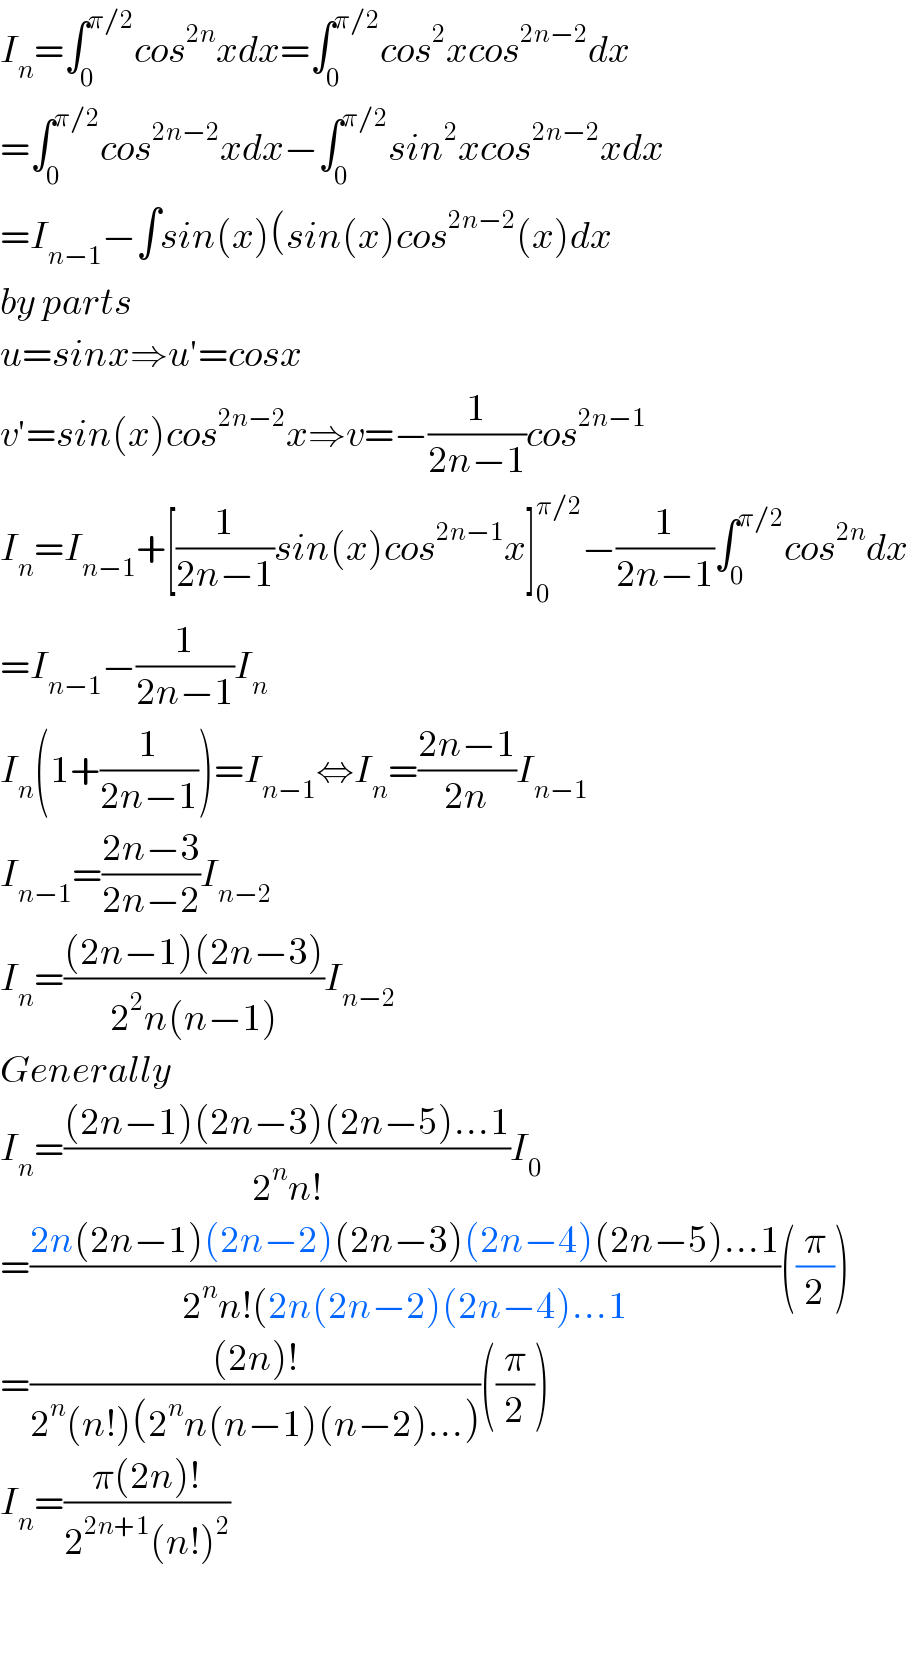 I_n =∫_0 ^(π/2) cos^(2n) xdx=∫_0 ^(π/2) cos^2 xcos^(2n−2) dx  =∫_0 ^(π/2) cos^(2n−2) xdx−∫_0 ^(π/2) sin^2 xcos^(2n−2) xdx  =I_(n−1) −∫sin(x)(sin(x)cos^(2n−2) (x)dx  by parts  u=sinx⇒u′=cosx  v′=sin(x)cos^(2n−2) x⇒v=−(1/(2n−1))cos^(2n−1)   I_n =I_(n−1) +[(1/(2n−1))sin(x)cos^(2n−1) x]_0 ^(π/2) −(1/(2n−1))∫_0 ^(π/2) cos^(2n) dx  =I_(n−1) −(1/(2n−1))I_n   I_n (1+(1/(2n−1)))=I_(n−1) ⇔I_n =((2n−1)/(2n))I_(n−1)   I_(n−1) =((2n−3)/(2n−2))I_(n−2)   I_n =(((2n−1)(2n−3))/(2^2 n(n−1)))I_(n−2)   Generally  I_n =(((2n−1)(2n−3)(2n−5)...1)/(2^n n!))I_0   =((2n(2n−1)(2n−2)(2n−3)(2n−4)(2n−5)...1)/(2^n n!(2n(2n−2)(2n−4)...1))((π/2))  =(((2n)!)/(2^n (n!)(2^n n(n−1)(n−2)...)))((π/2))  I_n =((π(2n)!)/(2^(2n+1) (n!)^2 ))    